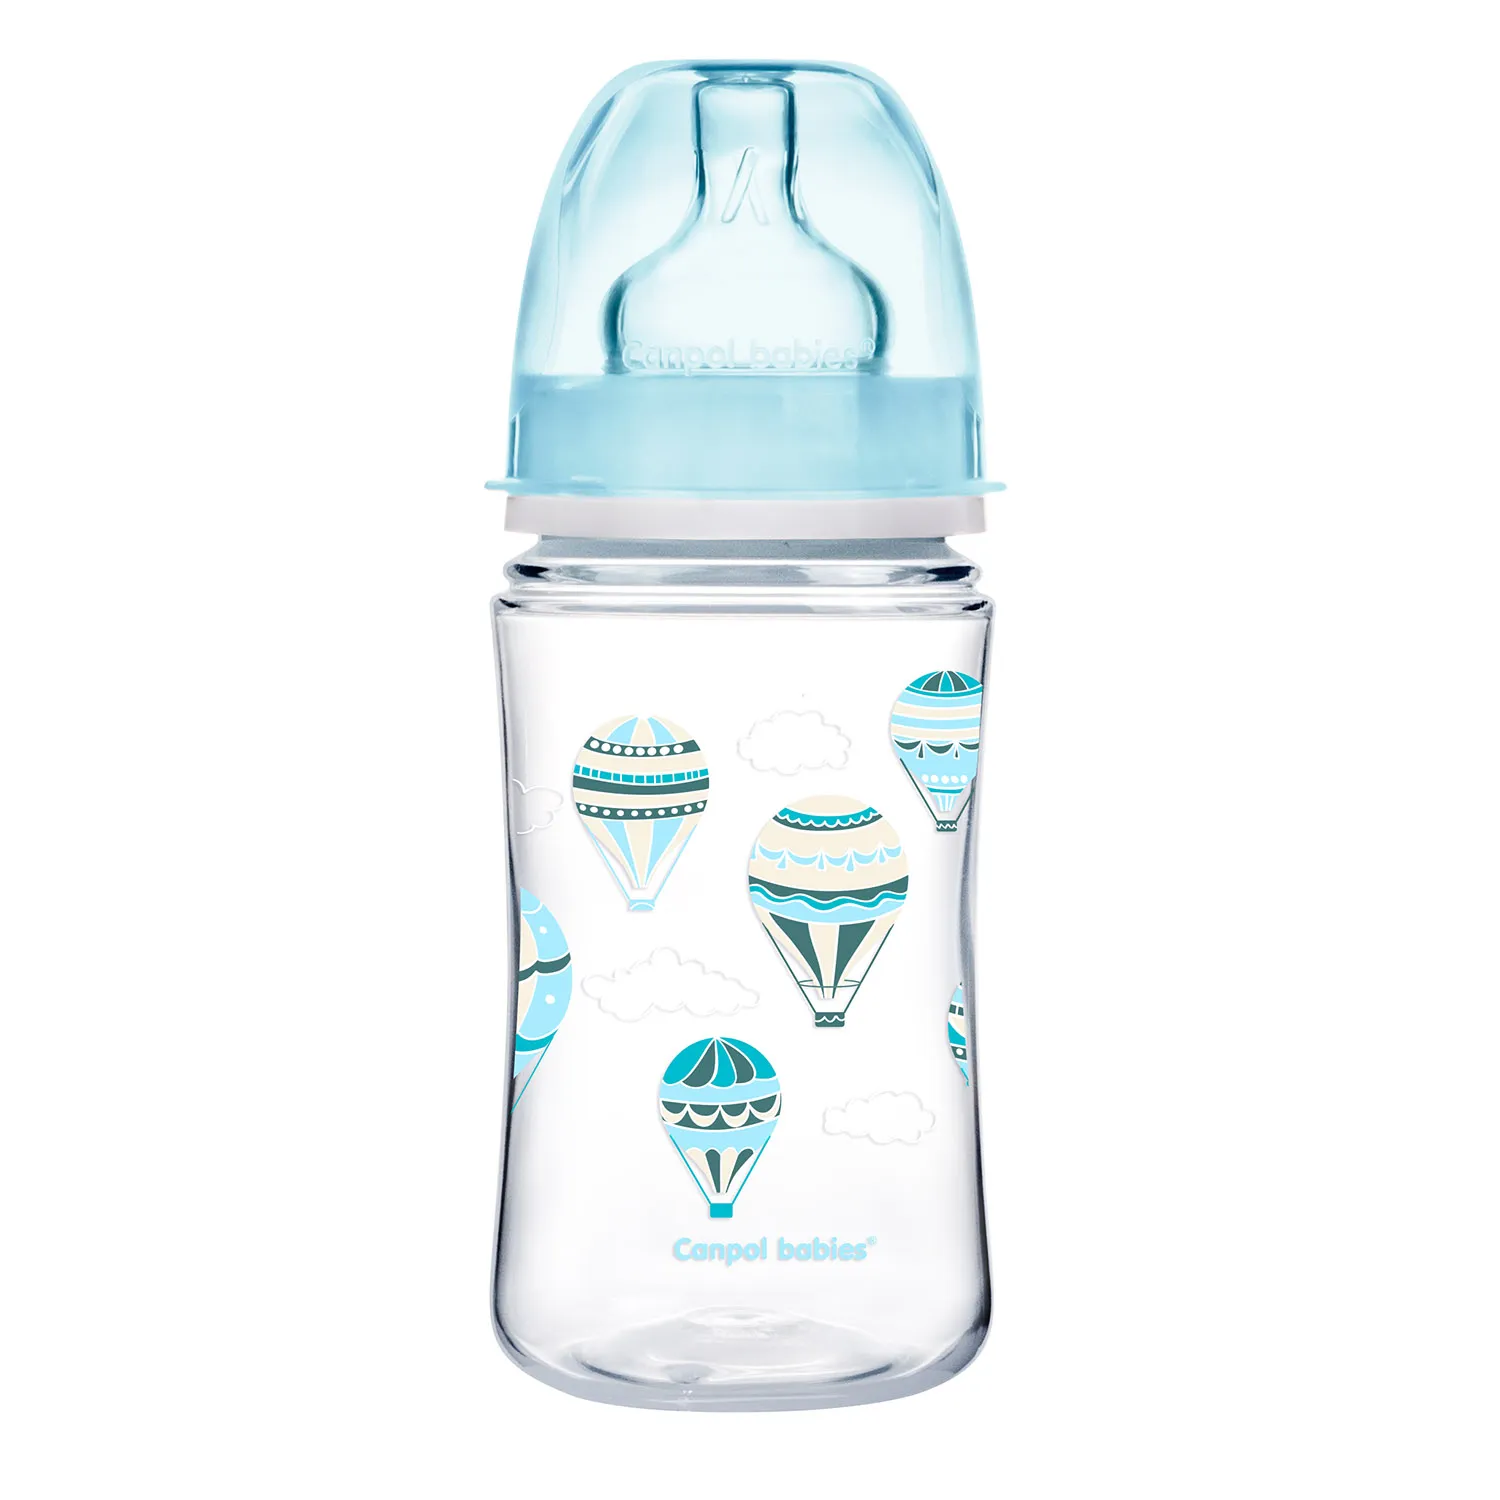 Canpol Babies, butelka szerokootworowa, antykolkowa, 3-6 miesiąca 35/225_blu, 240 ml 